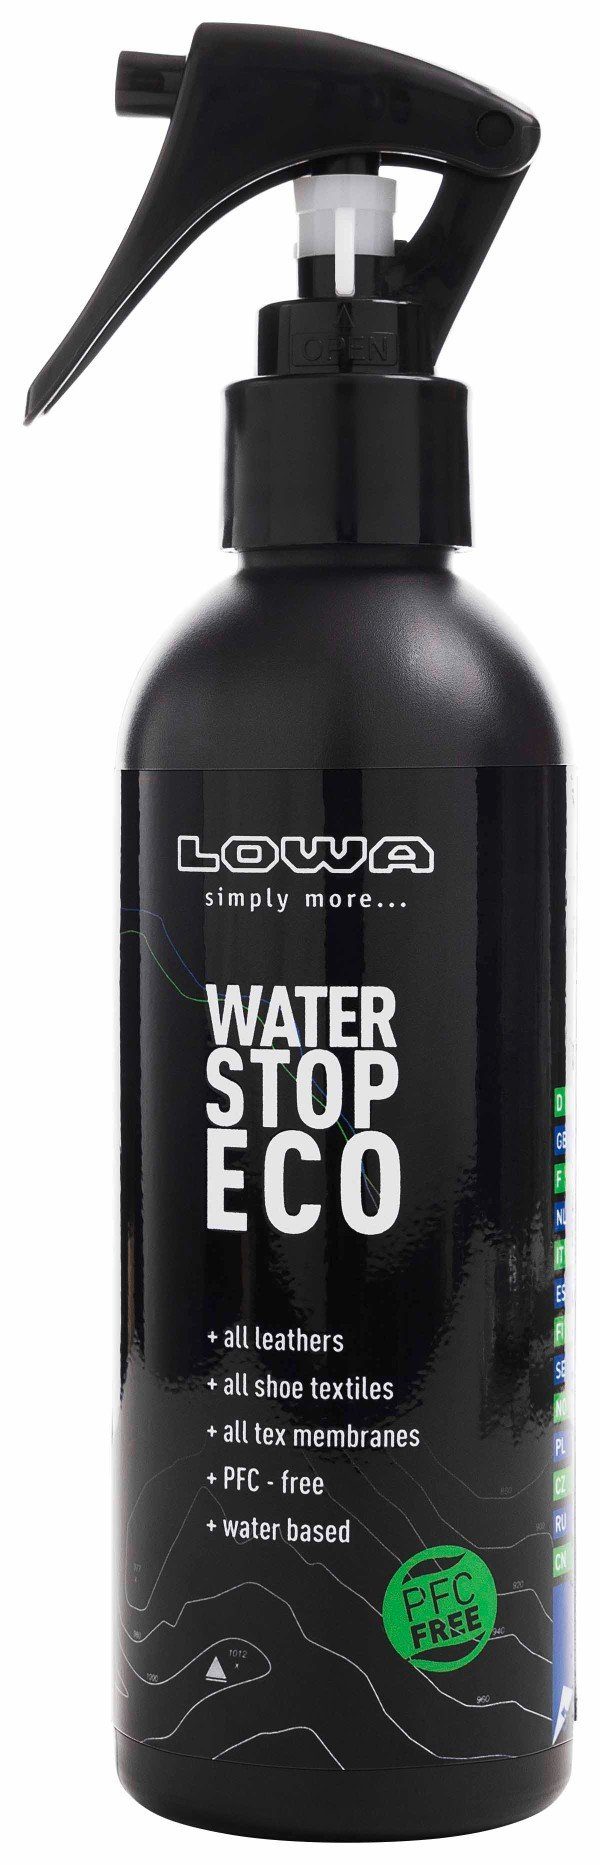 Stop und alle - Schuh-Imprägnierspray Water imprä­gniert Mate­rialien Lowa ECO schützt